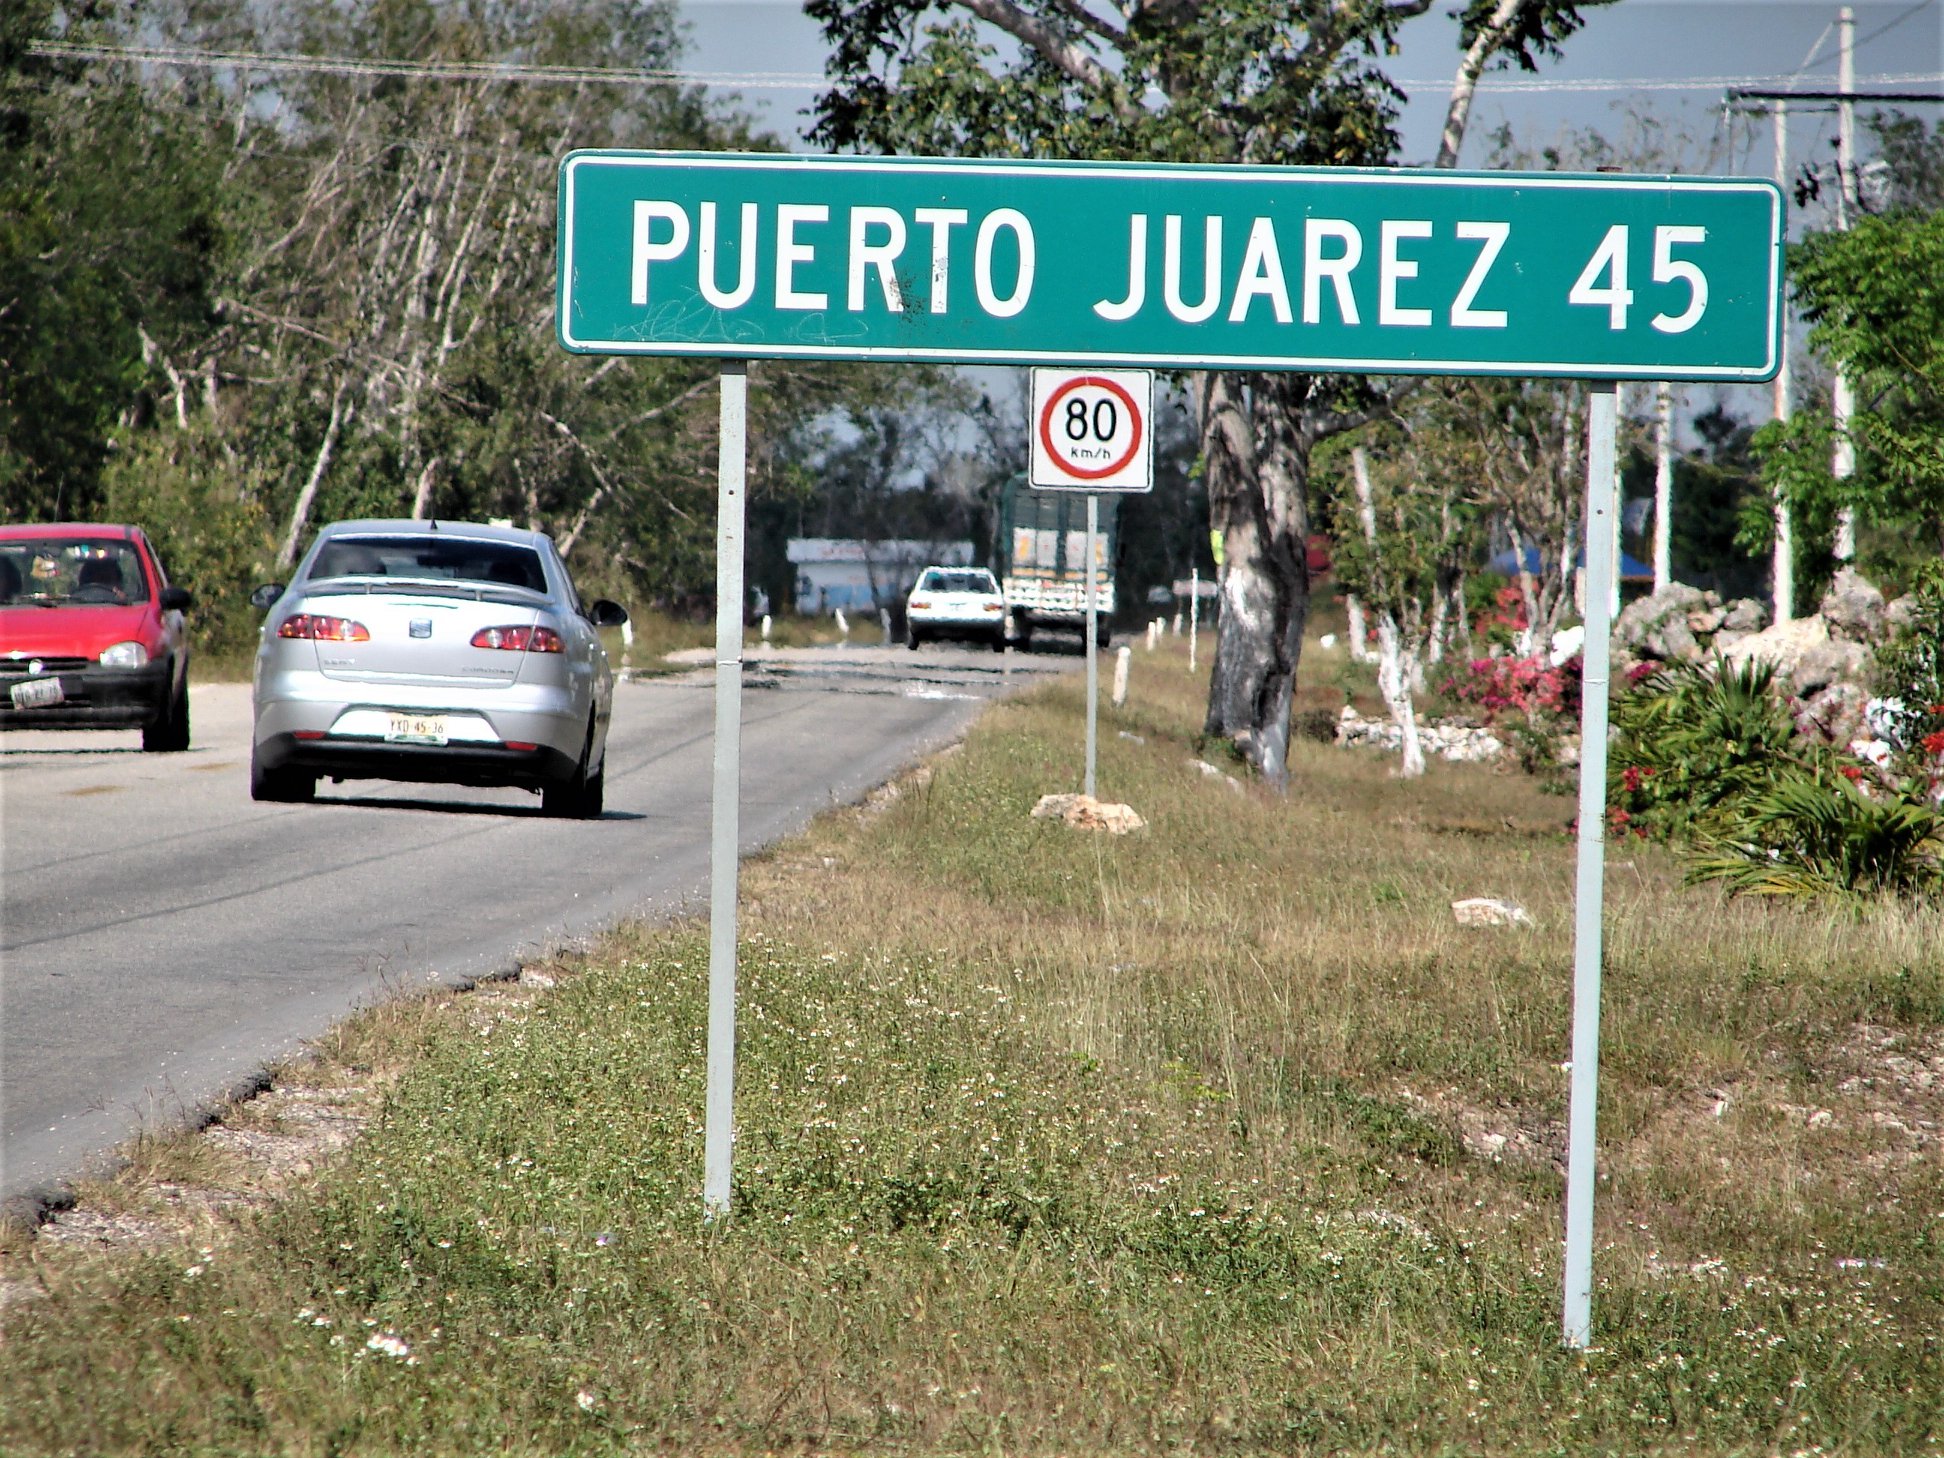 Cómo llegar a Puerto Juárez desde el aeropuerto de Cancún